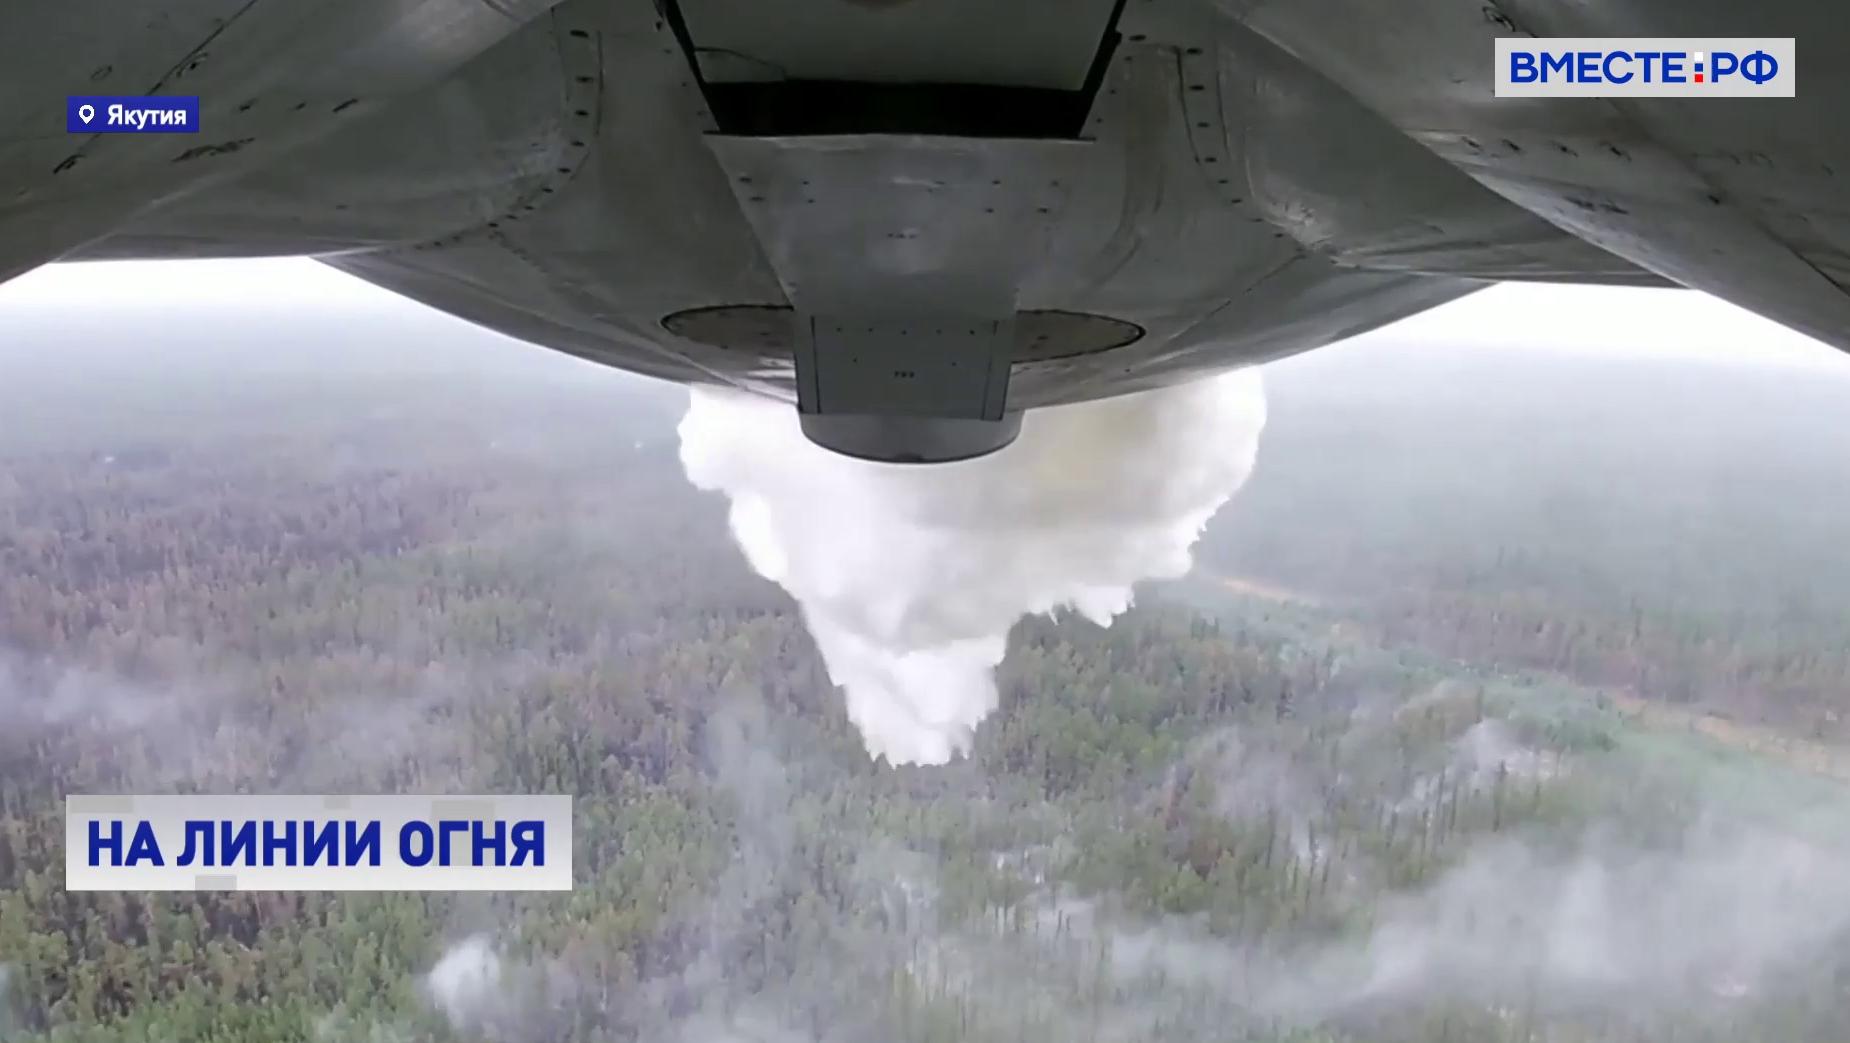  Авиация Минобороны помогает тушить лесные пожары в регионах